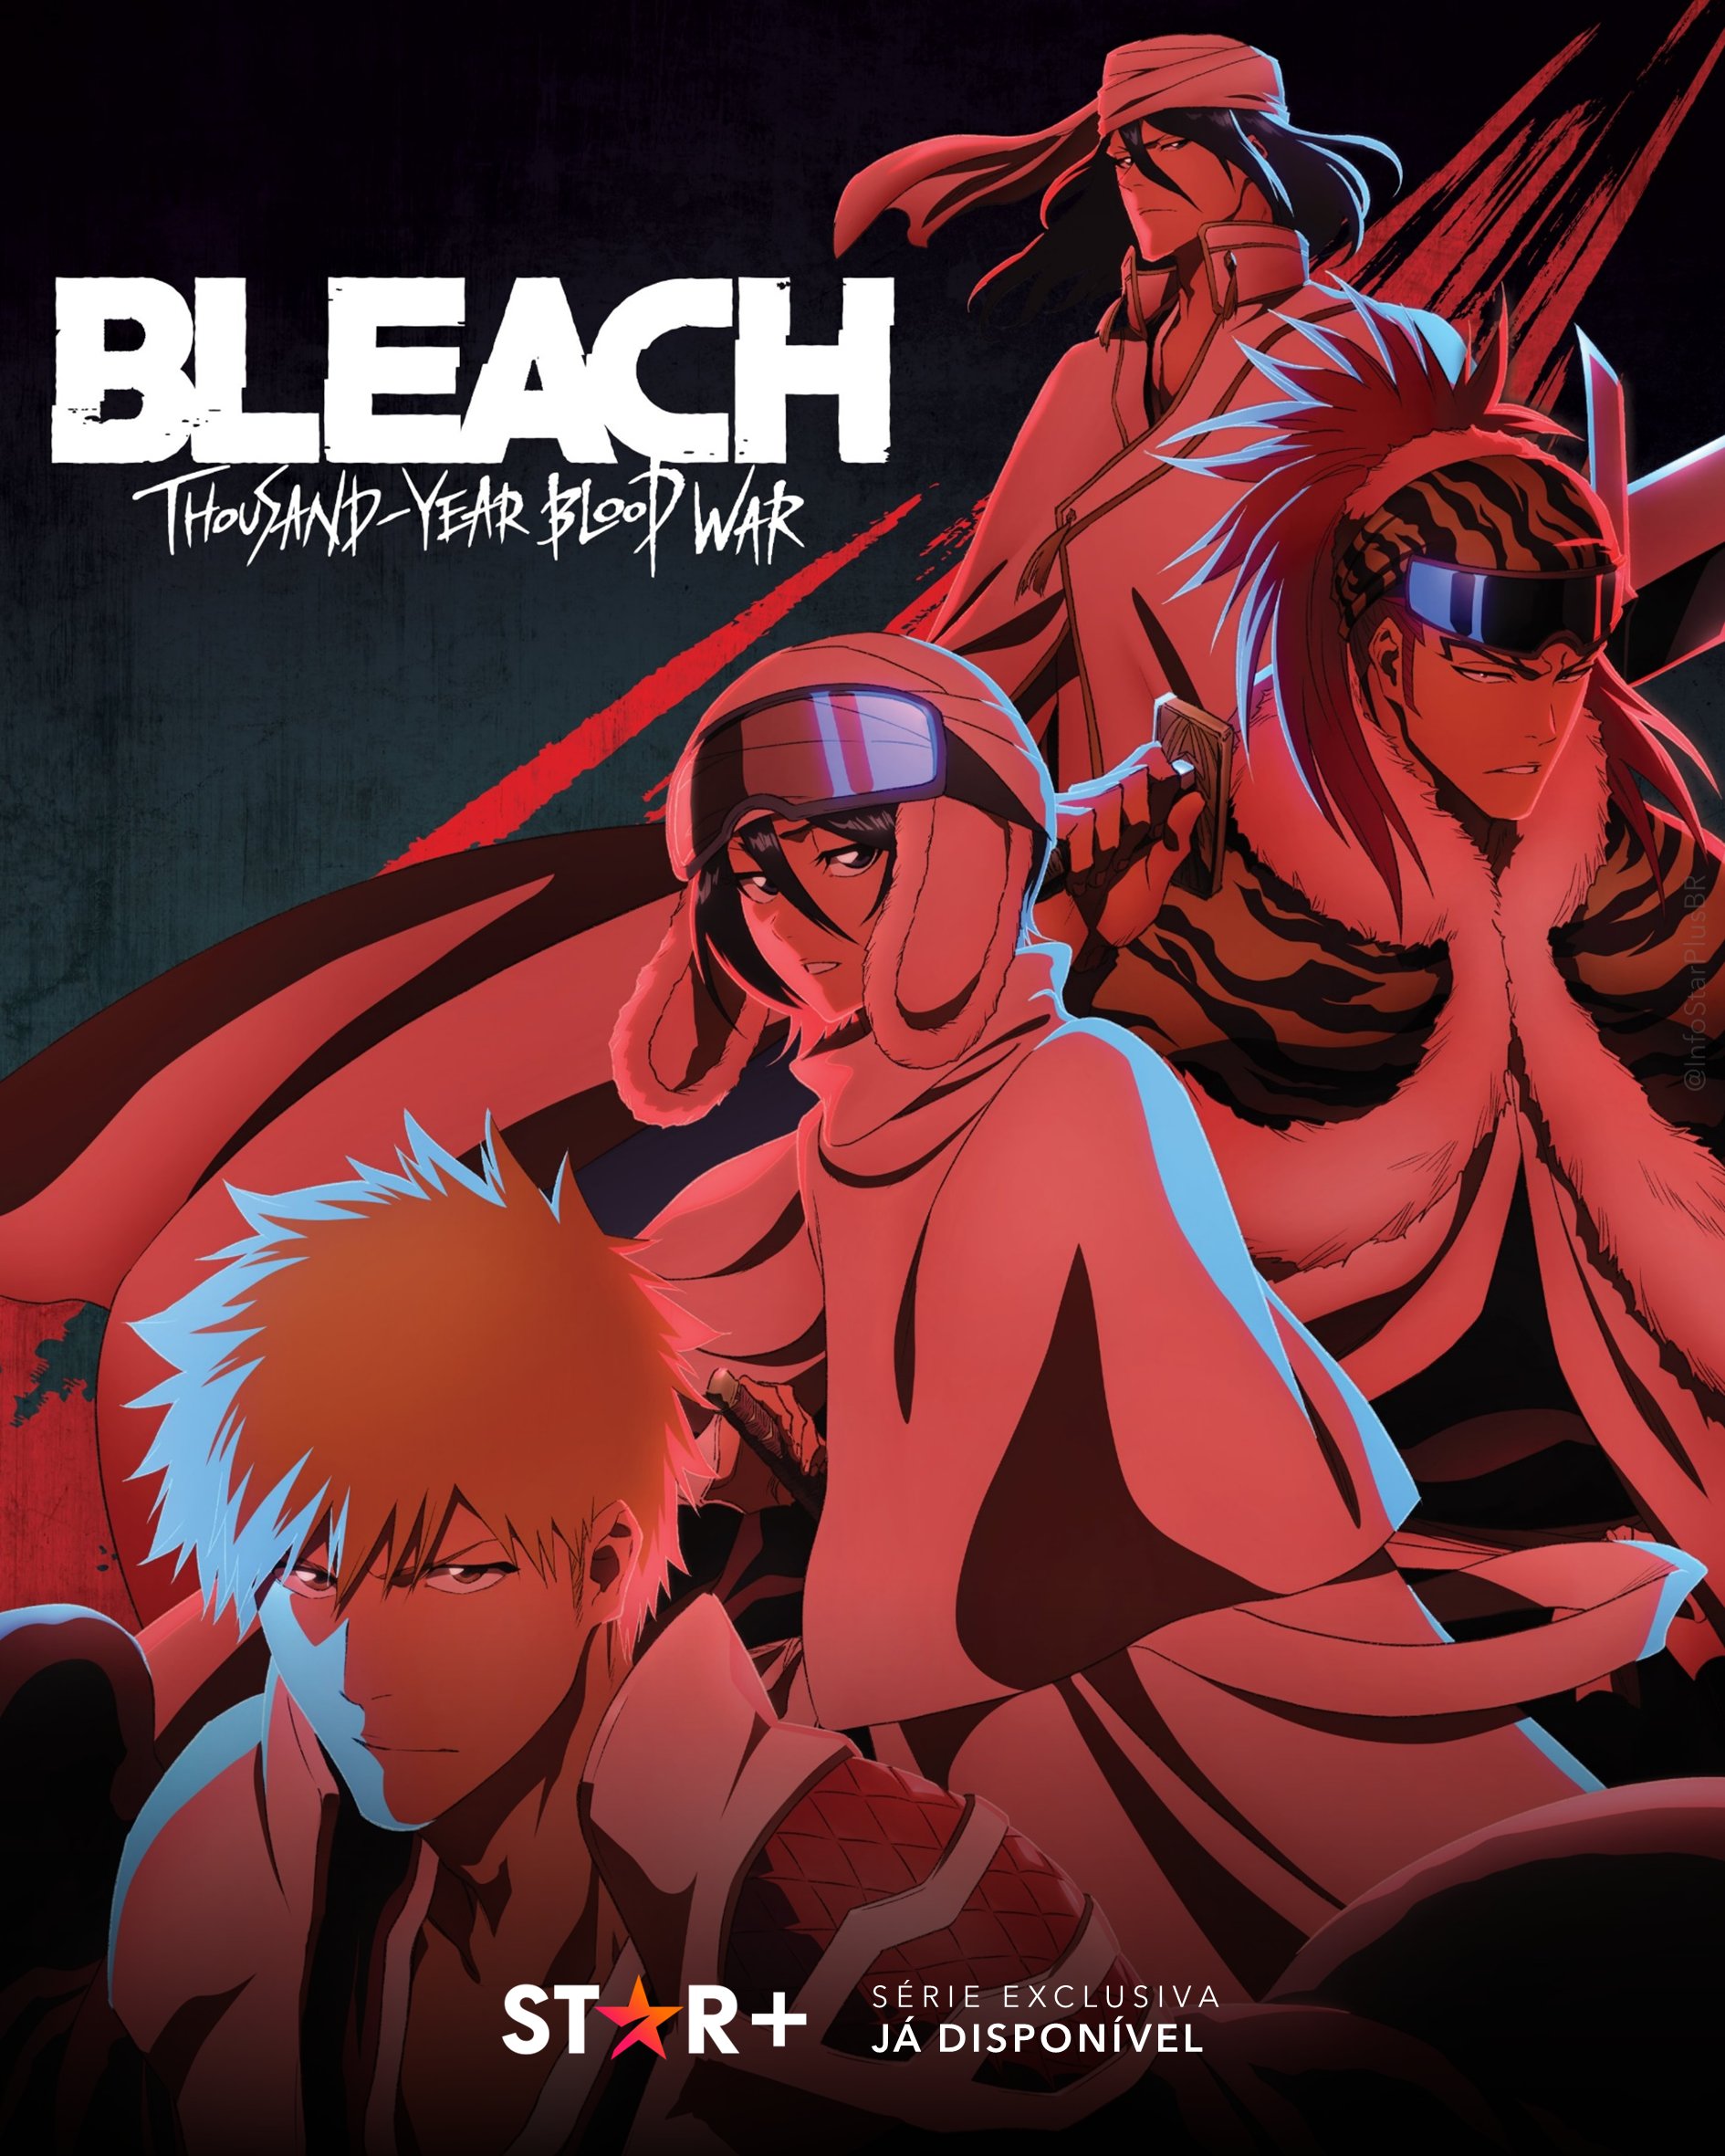 Bleach: Thousand-Year Blood War – Star+ dá inicio aos novos